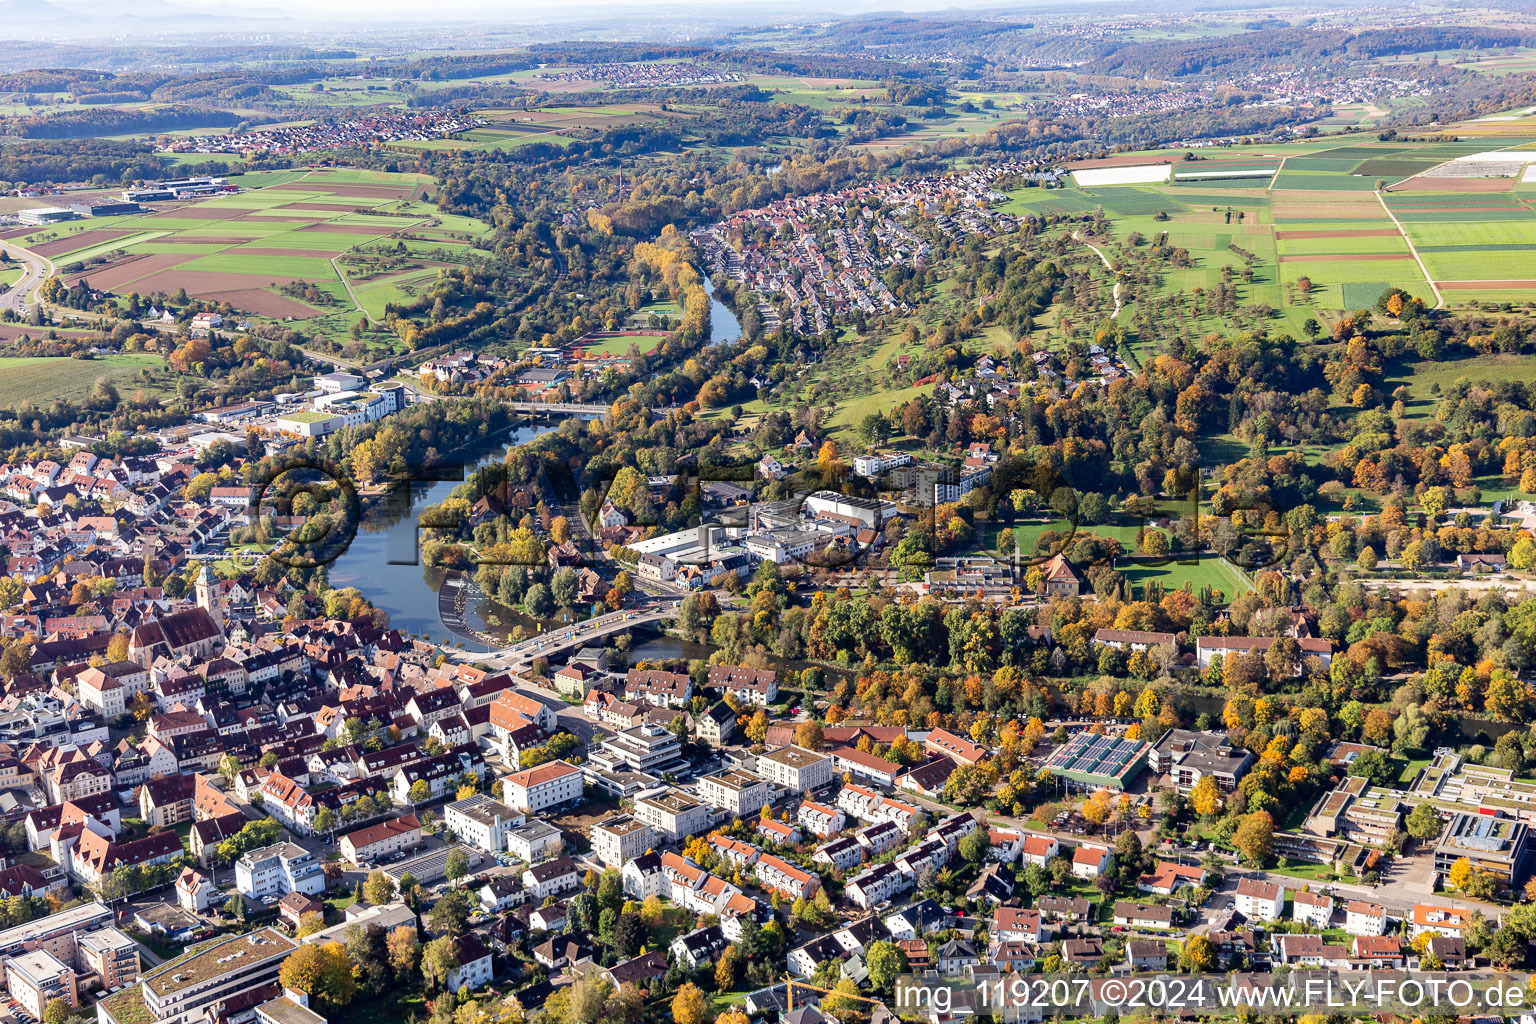 Ortskern am Uferbereich des Neckar - Flußverlaufes in Nürtingen im Bundesland Baden-Württemberg, Deutschland